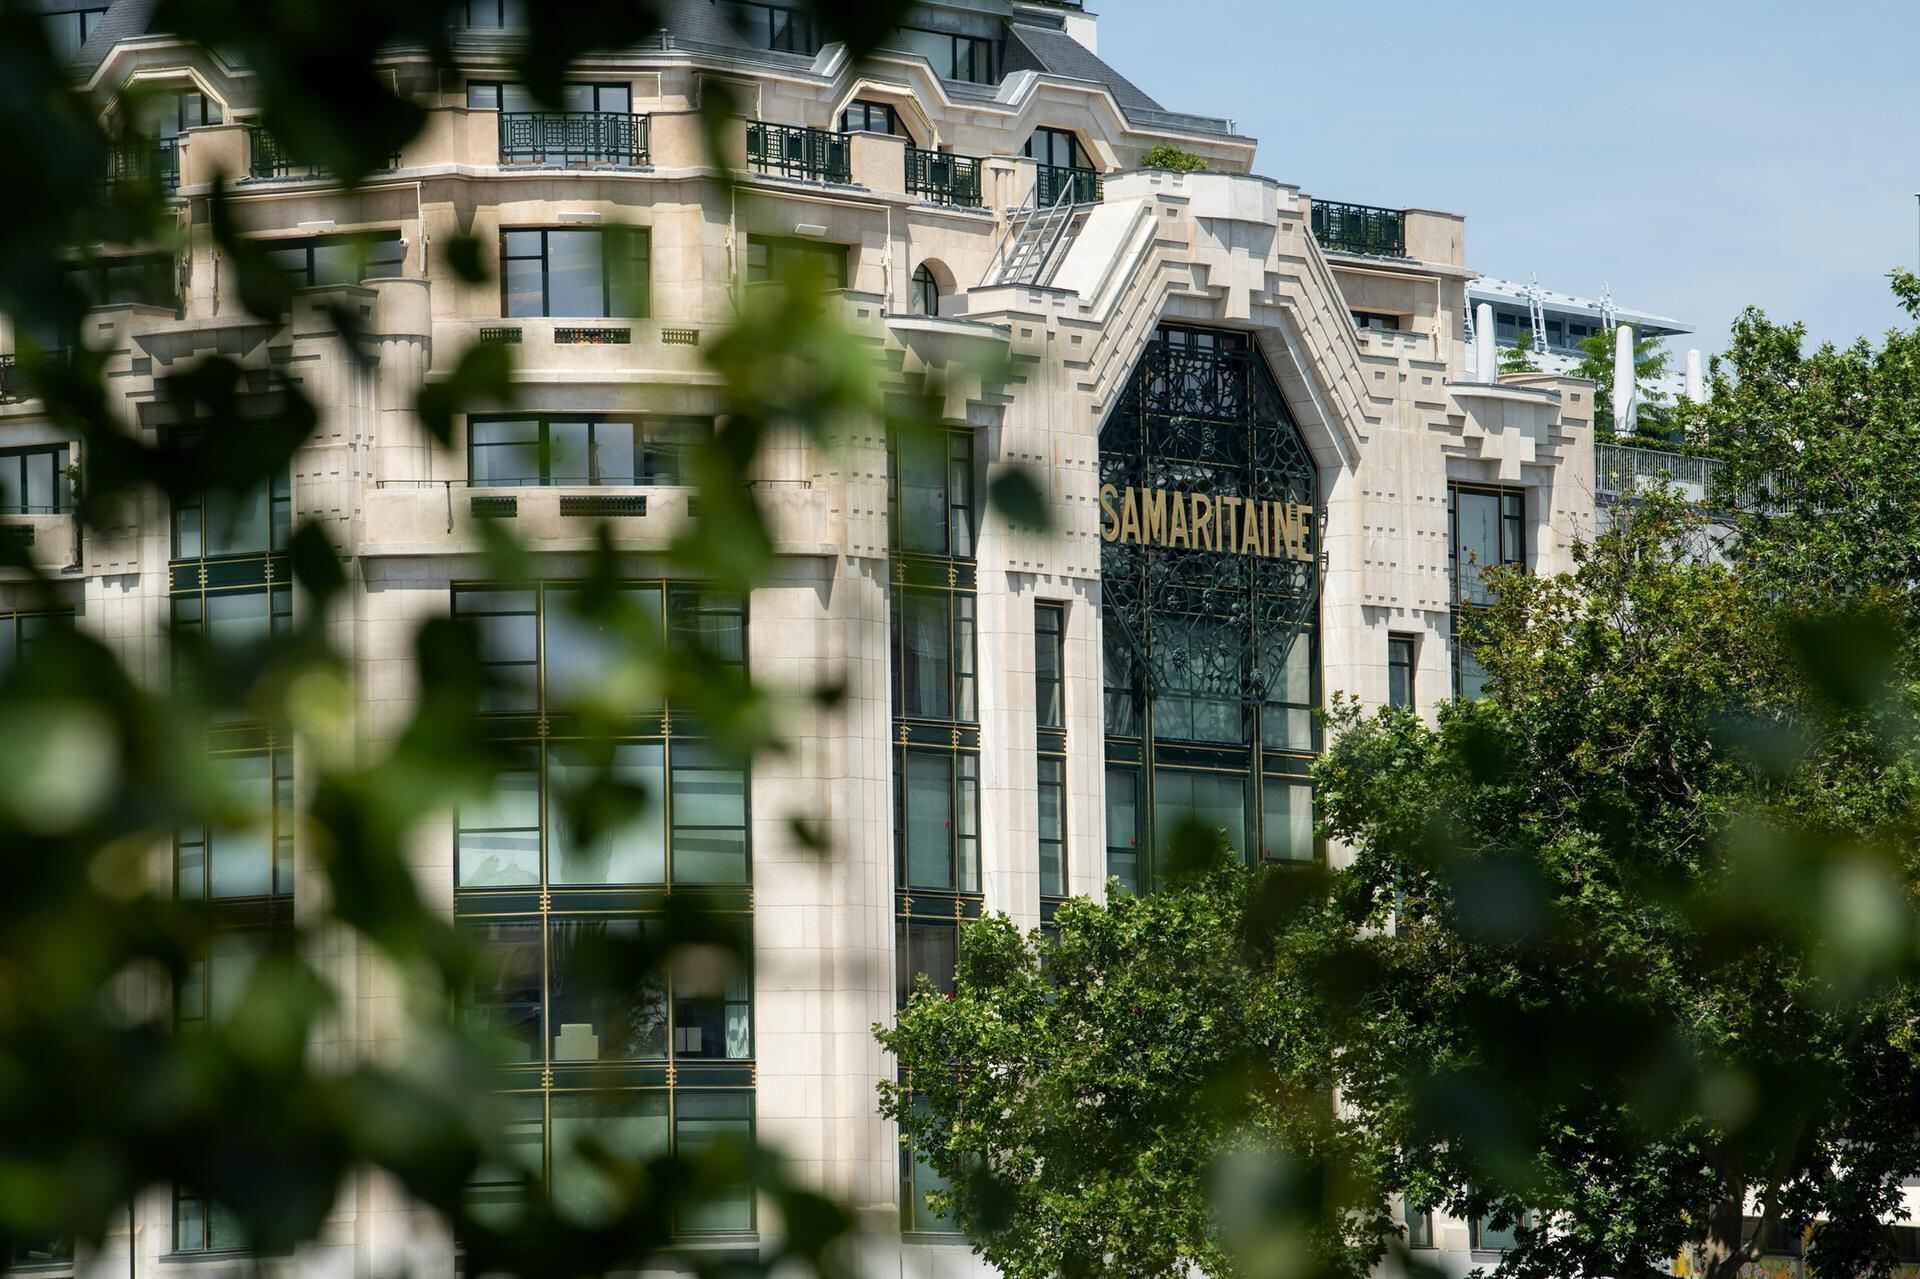 La Samaritaine store, a masterpiece of Art Nouveau and Art Deco